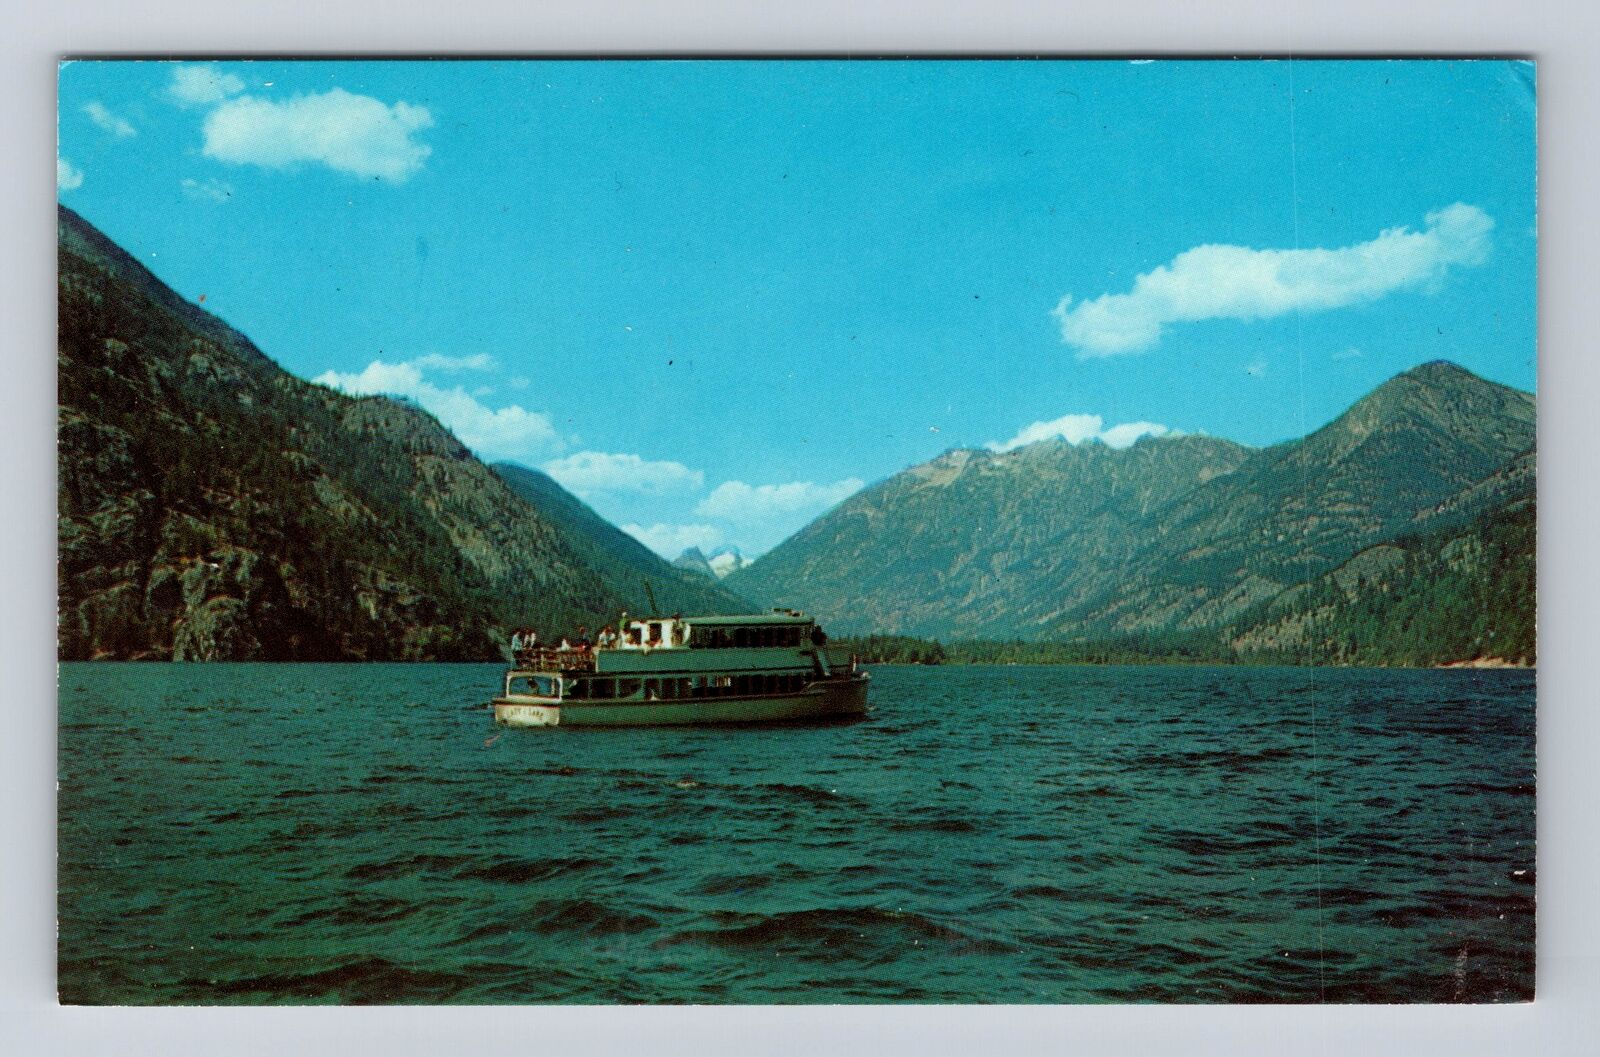 Chelan WA-Washington, Lake Chelan, Lady of the Lake Boat, Vintage Postcard